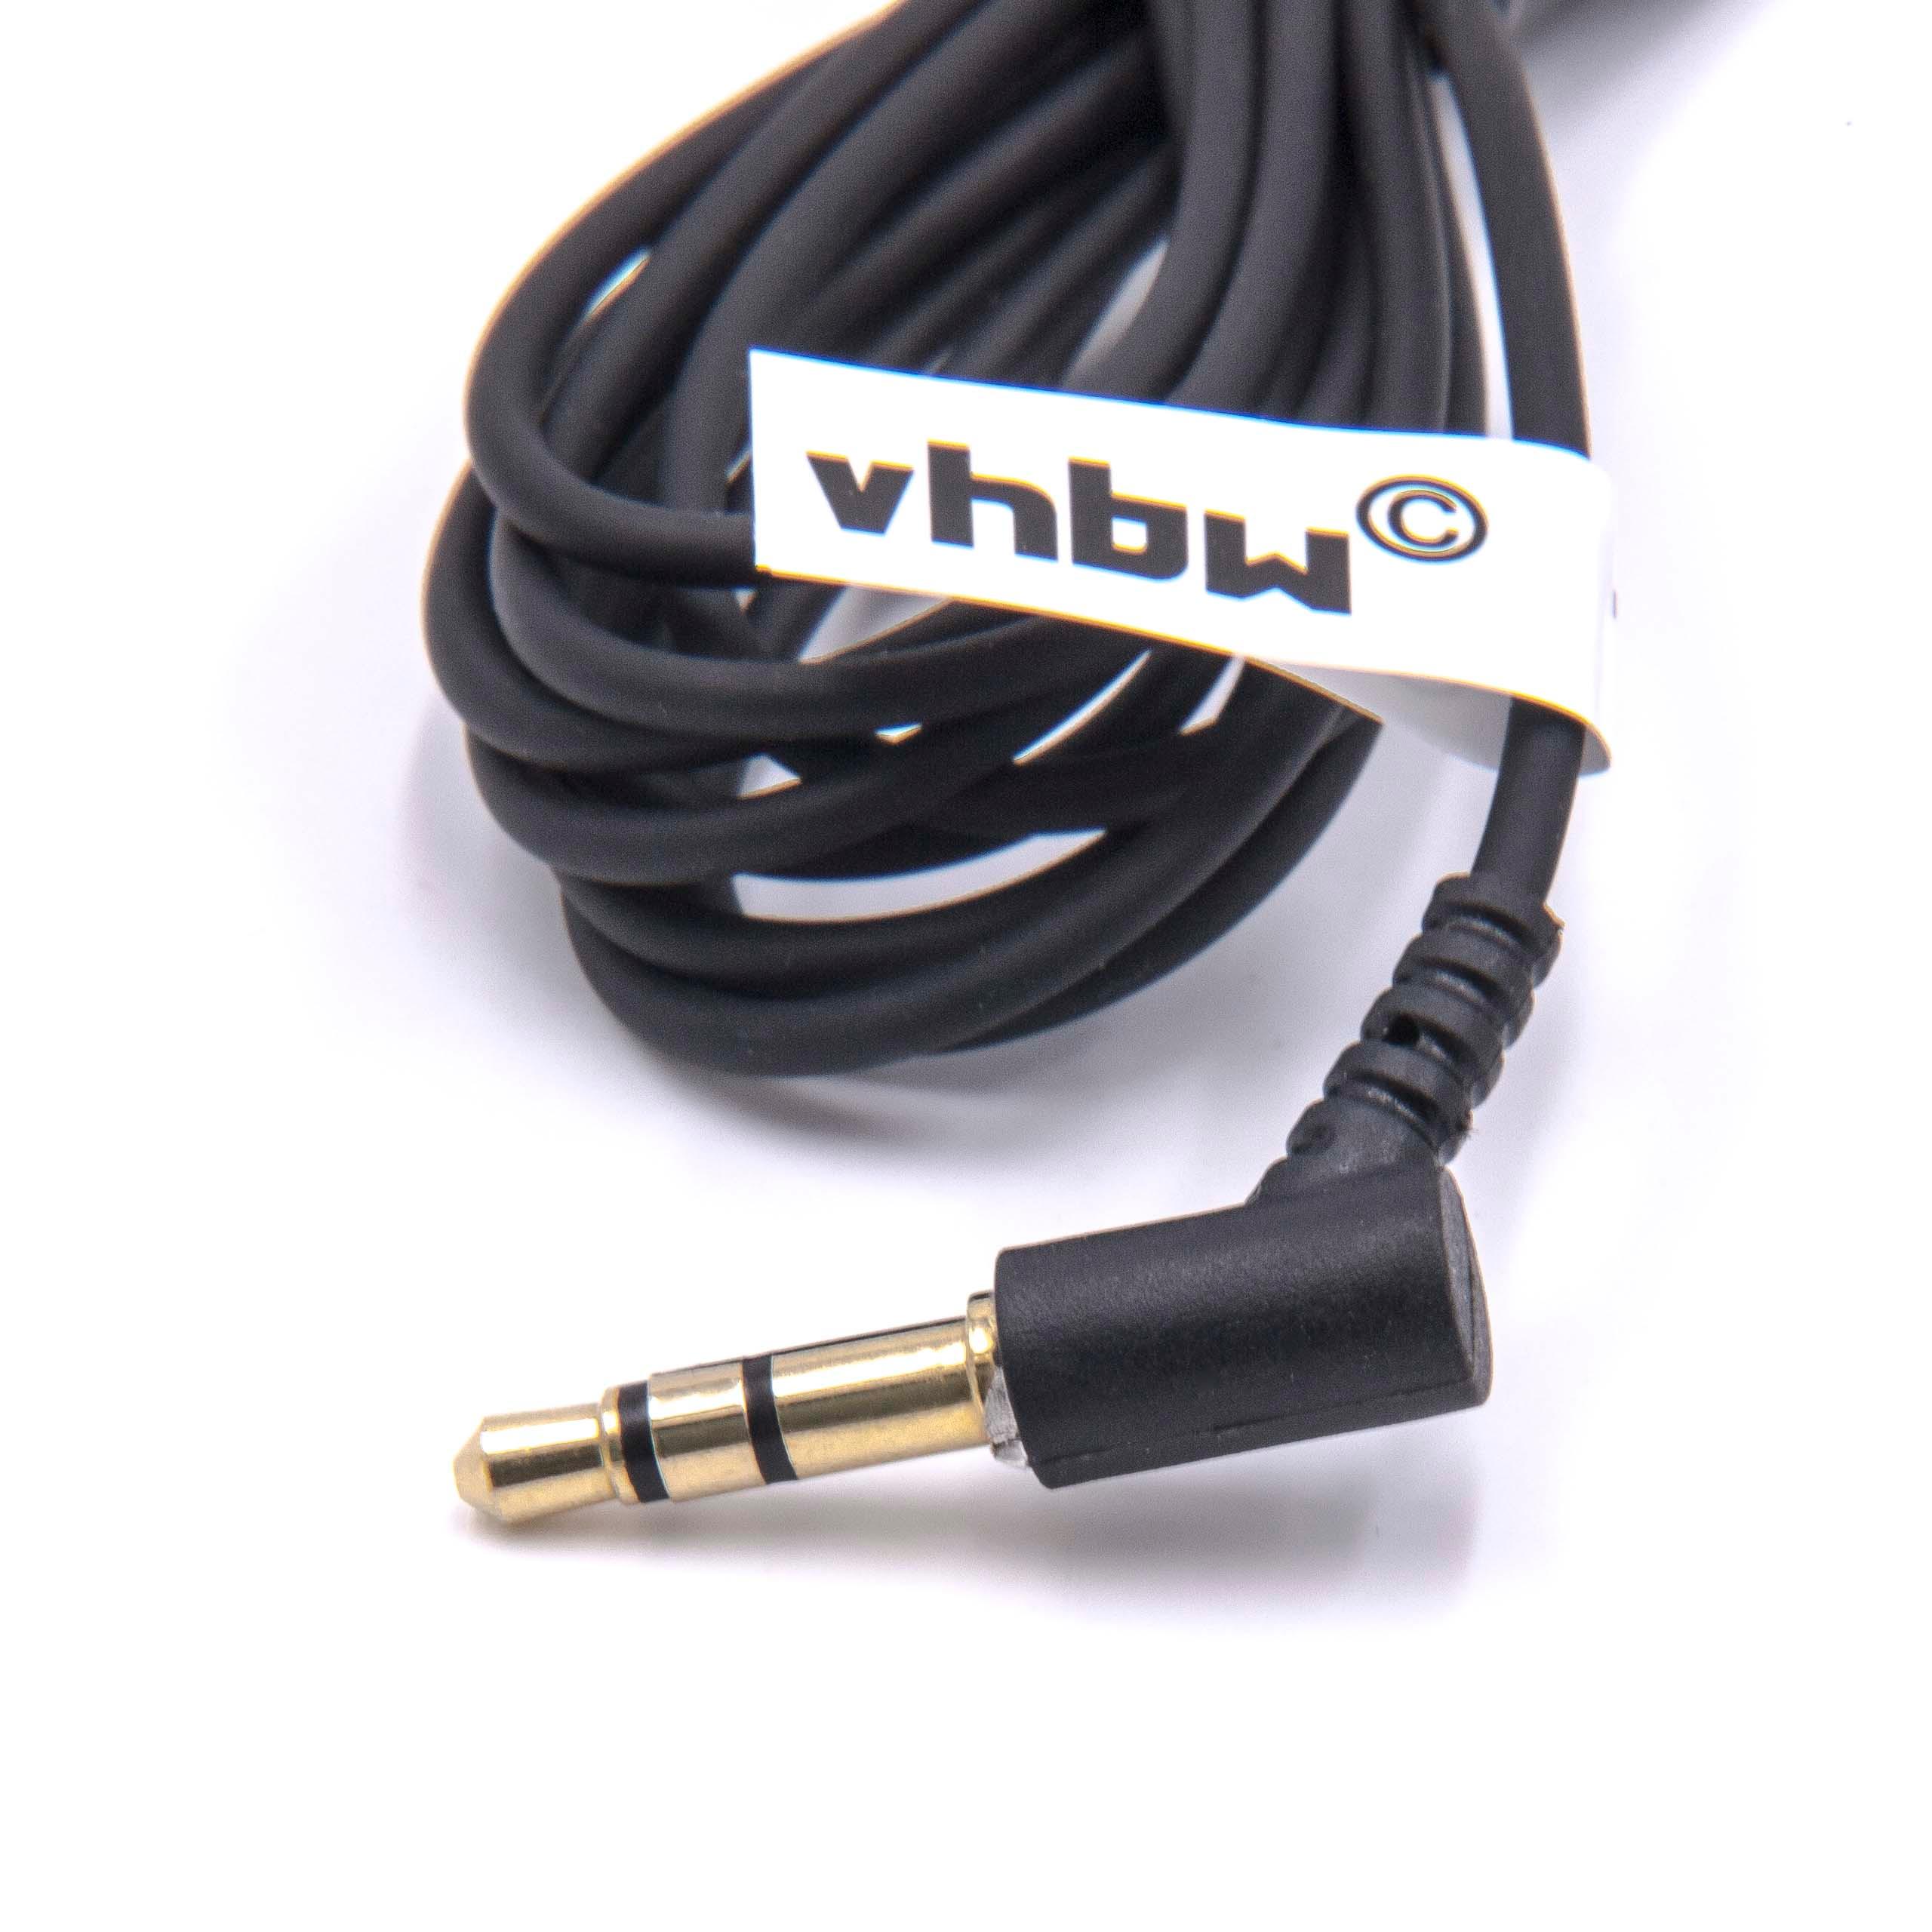 Headphones Cable suitable for Bose QuietComfort etc., 180 cm